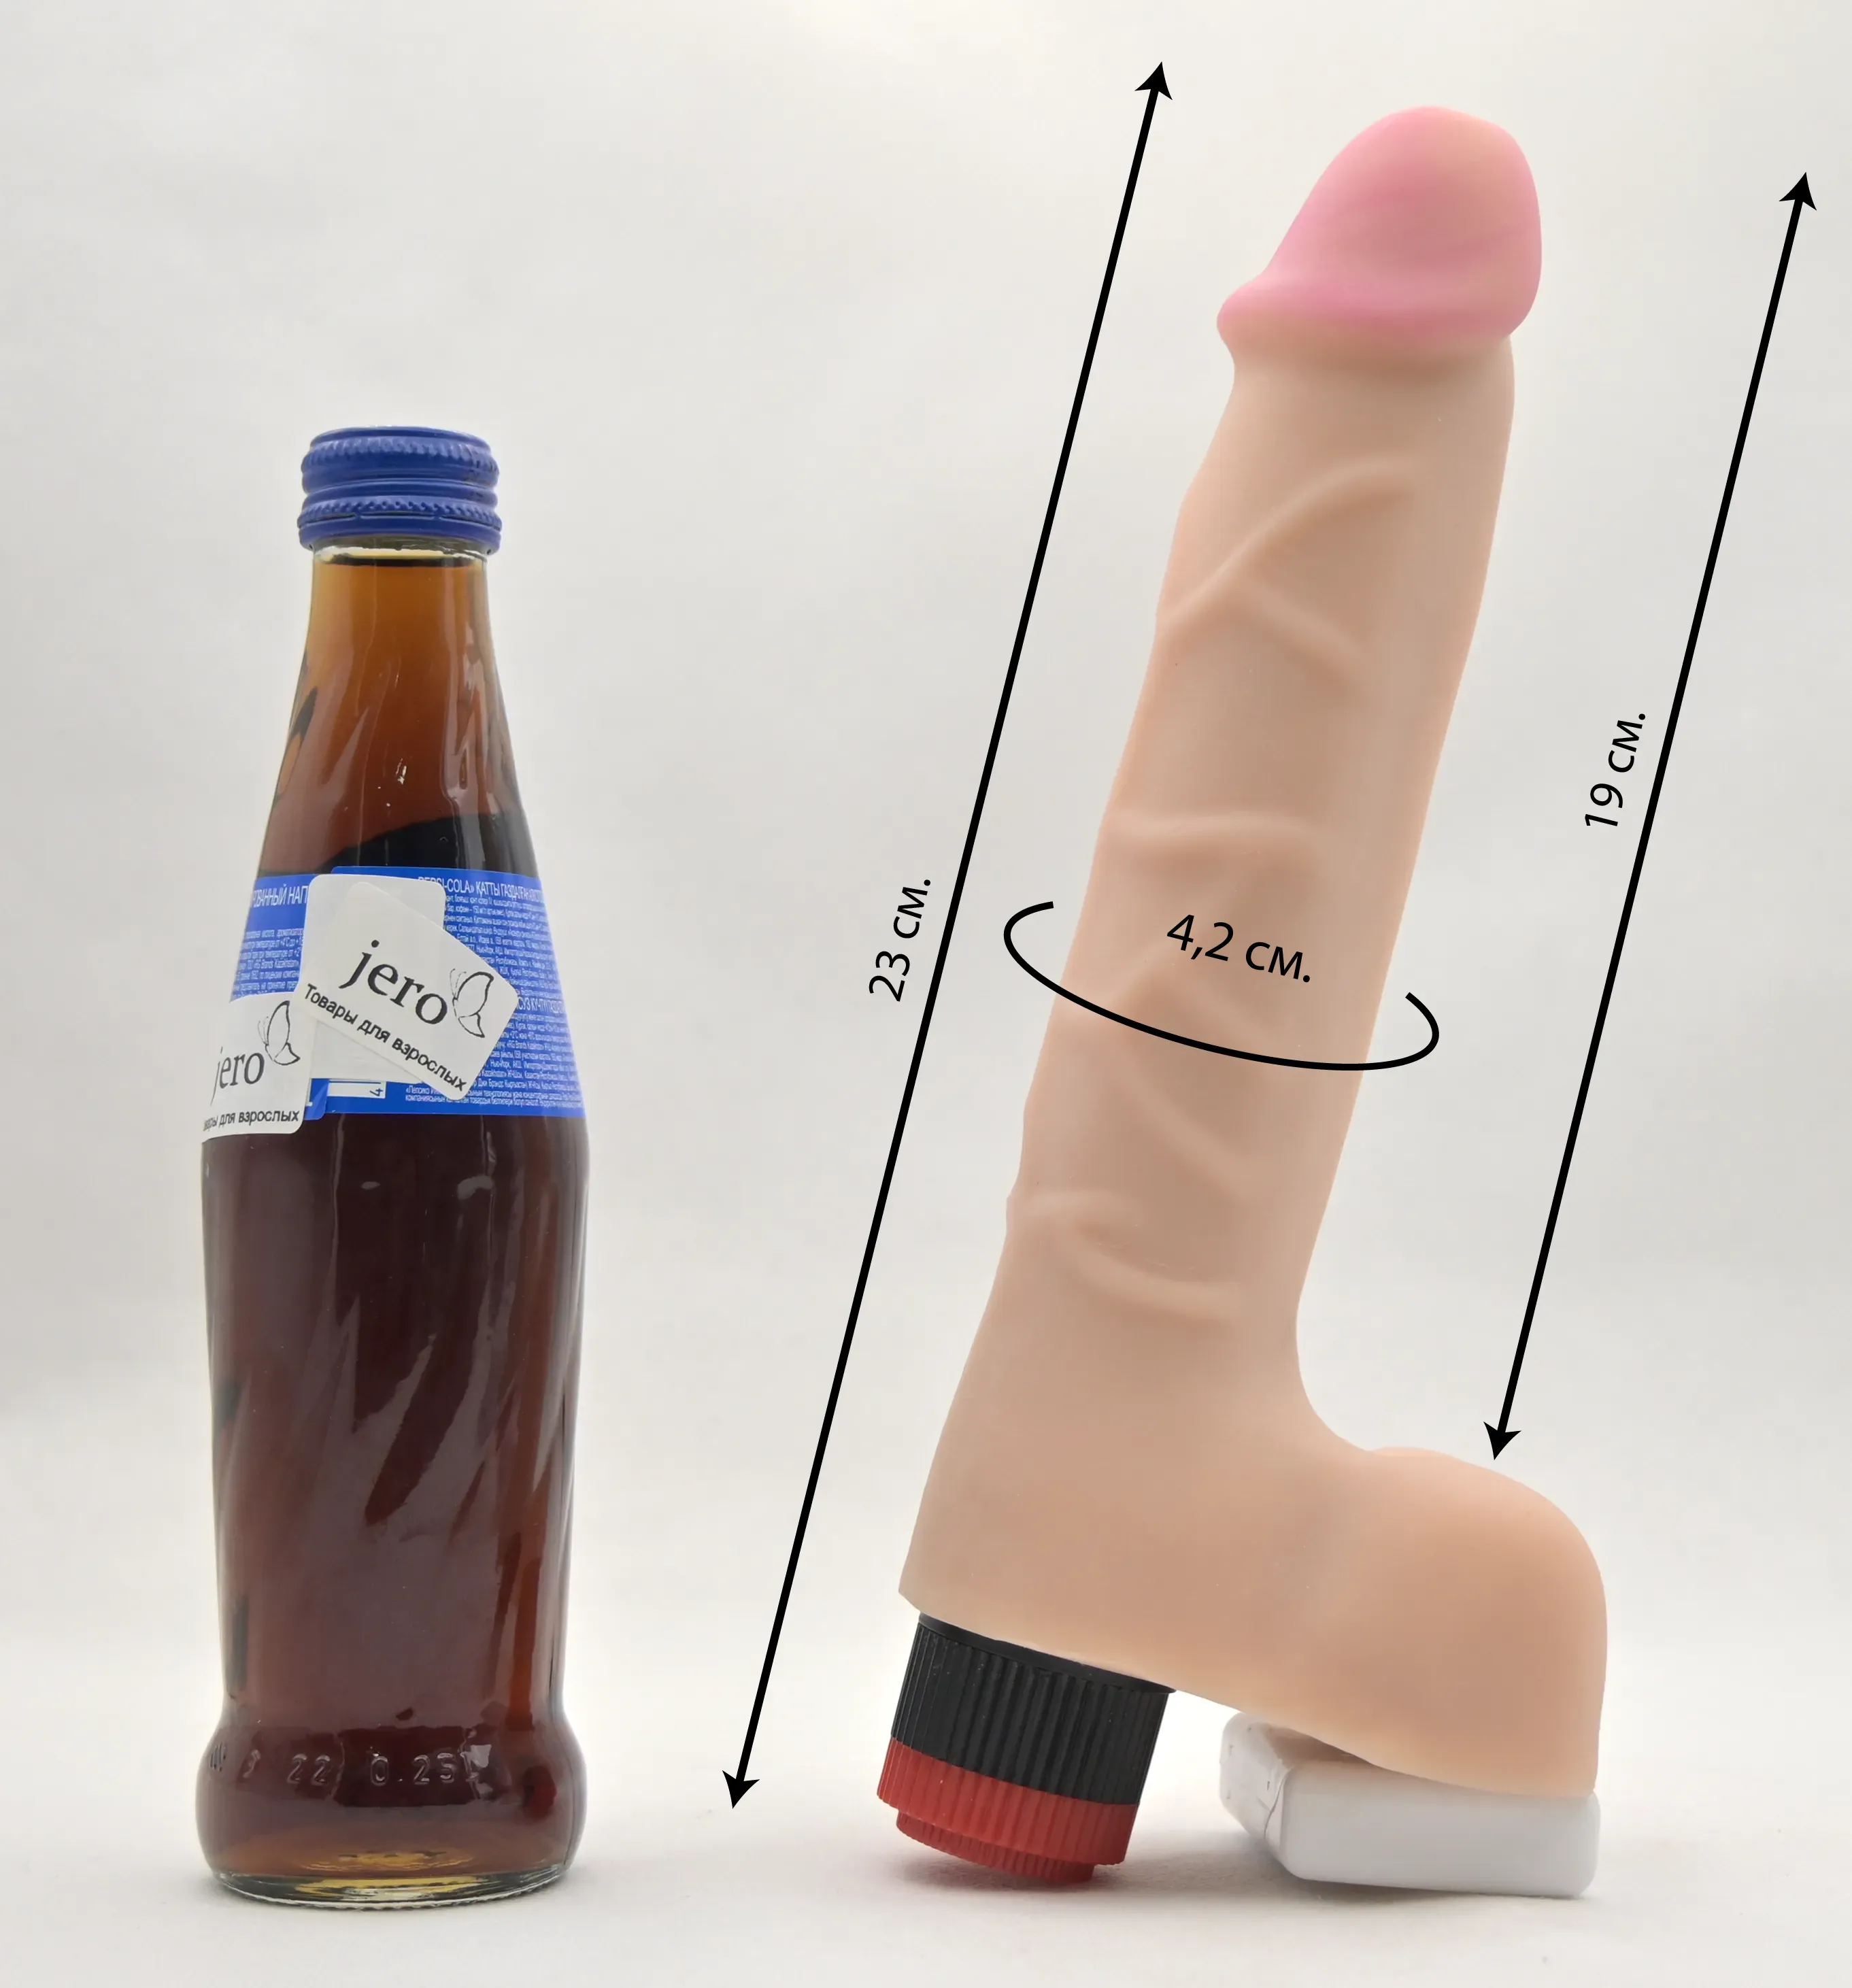 Размеры фаллоса и сравнение с бутылкой колы